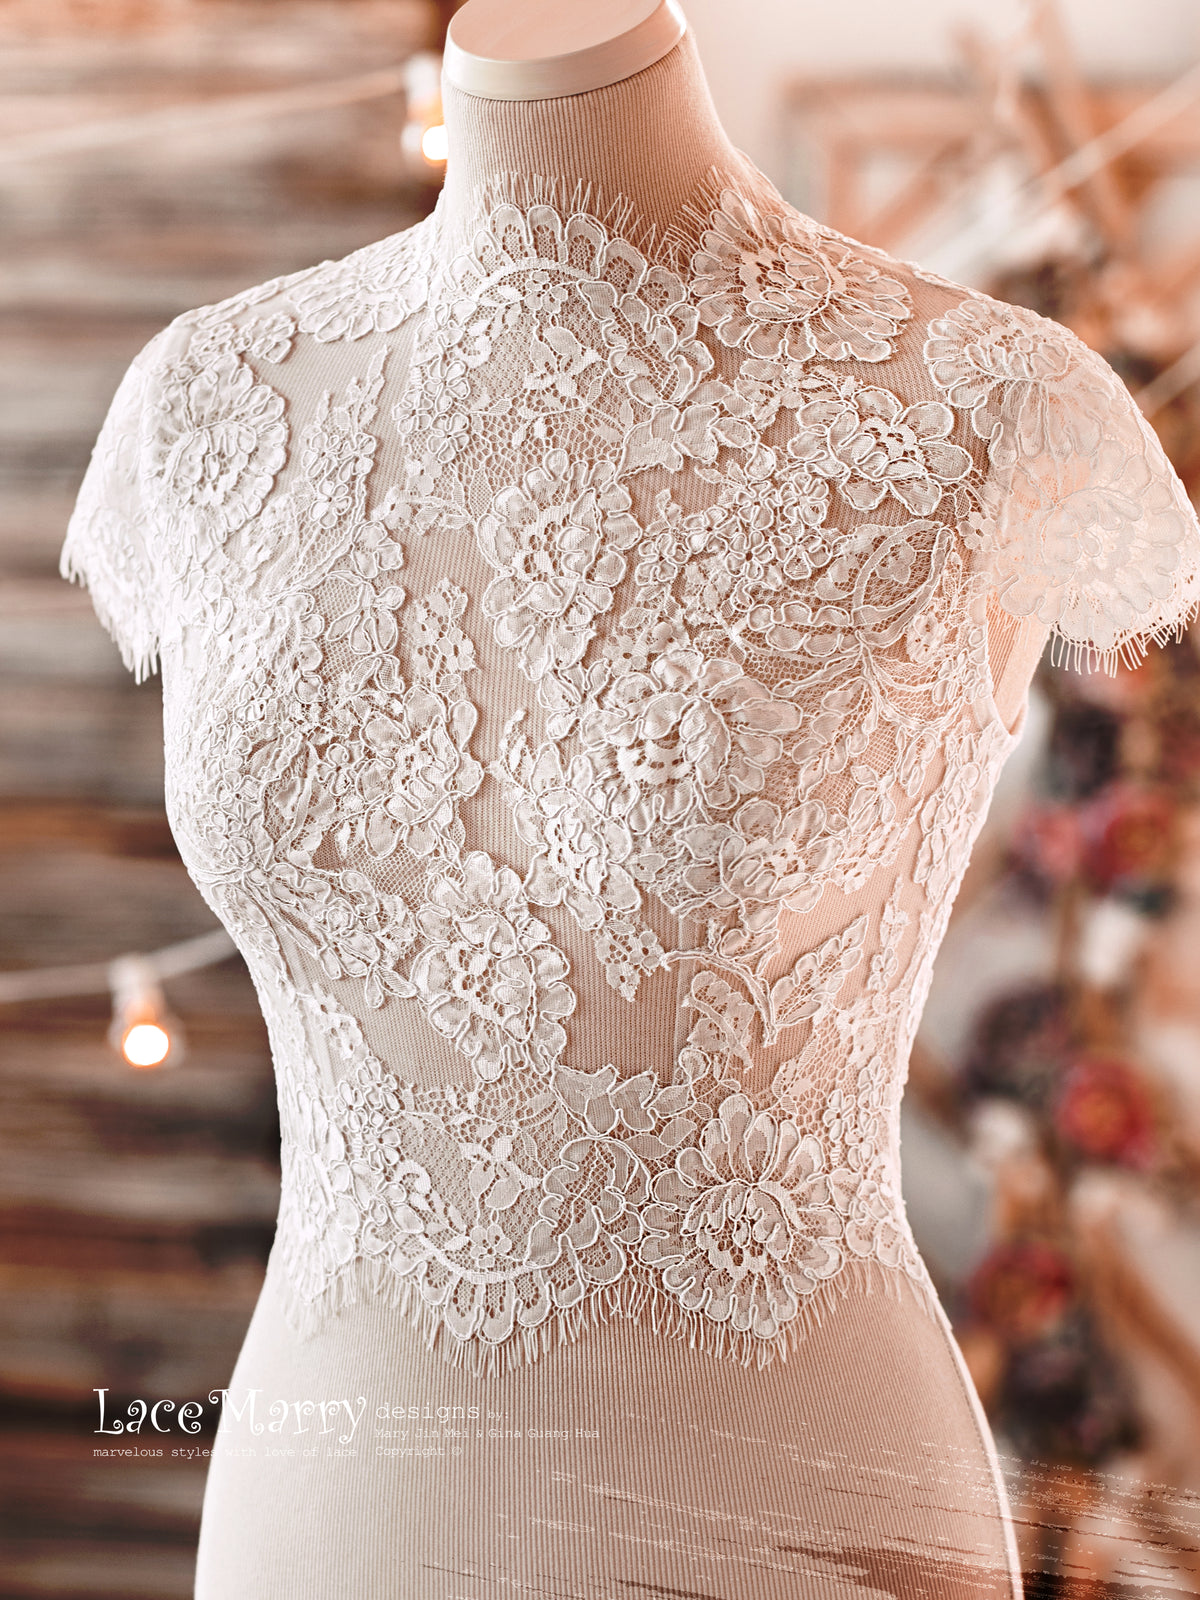 Transparent Lace Crop Top for your Plain Wedding Dress